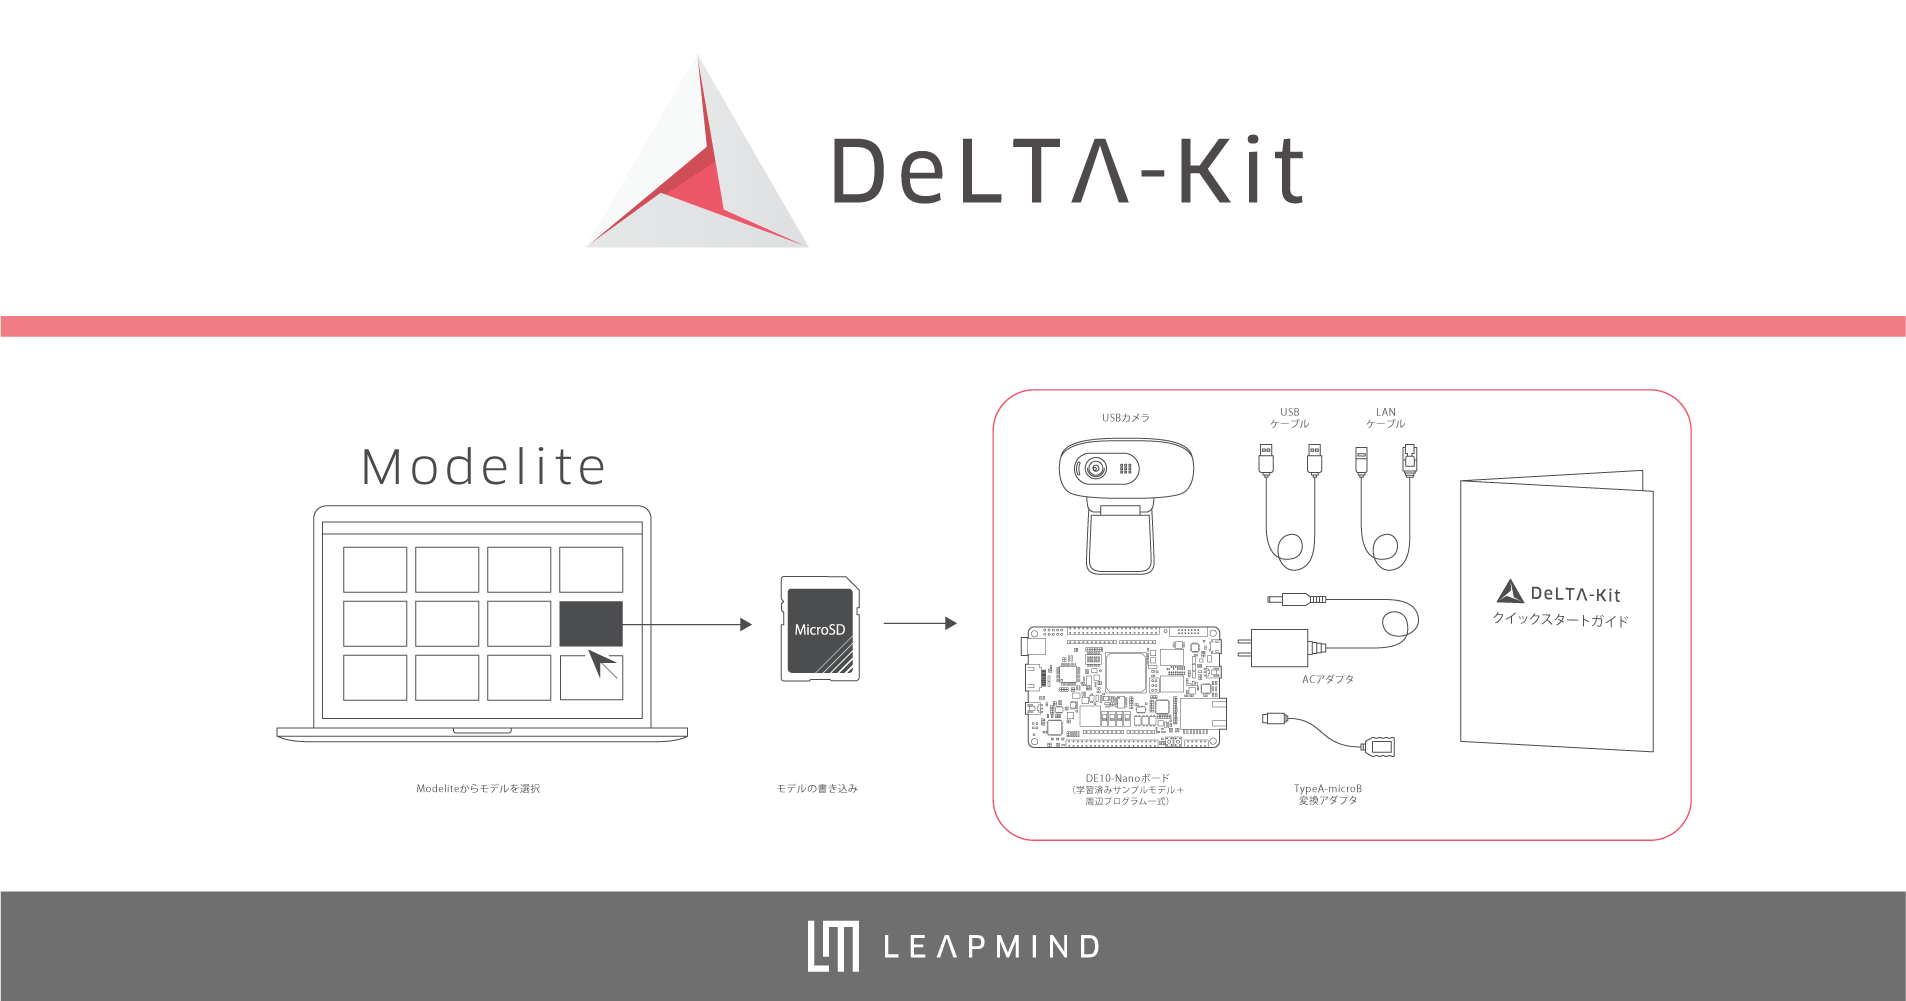 組込みディープラーニングモデル評価キット「DeLTA-Kit」の導入をもっと簡単に